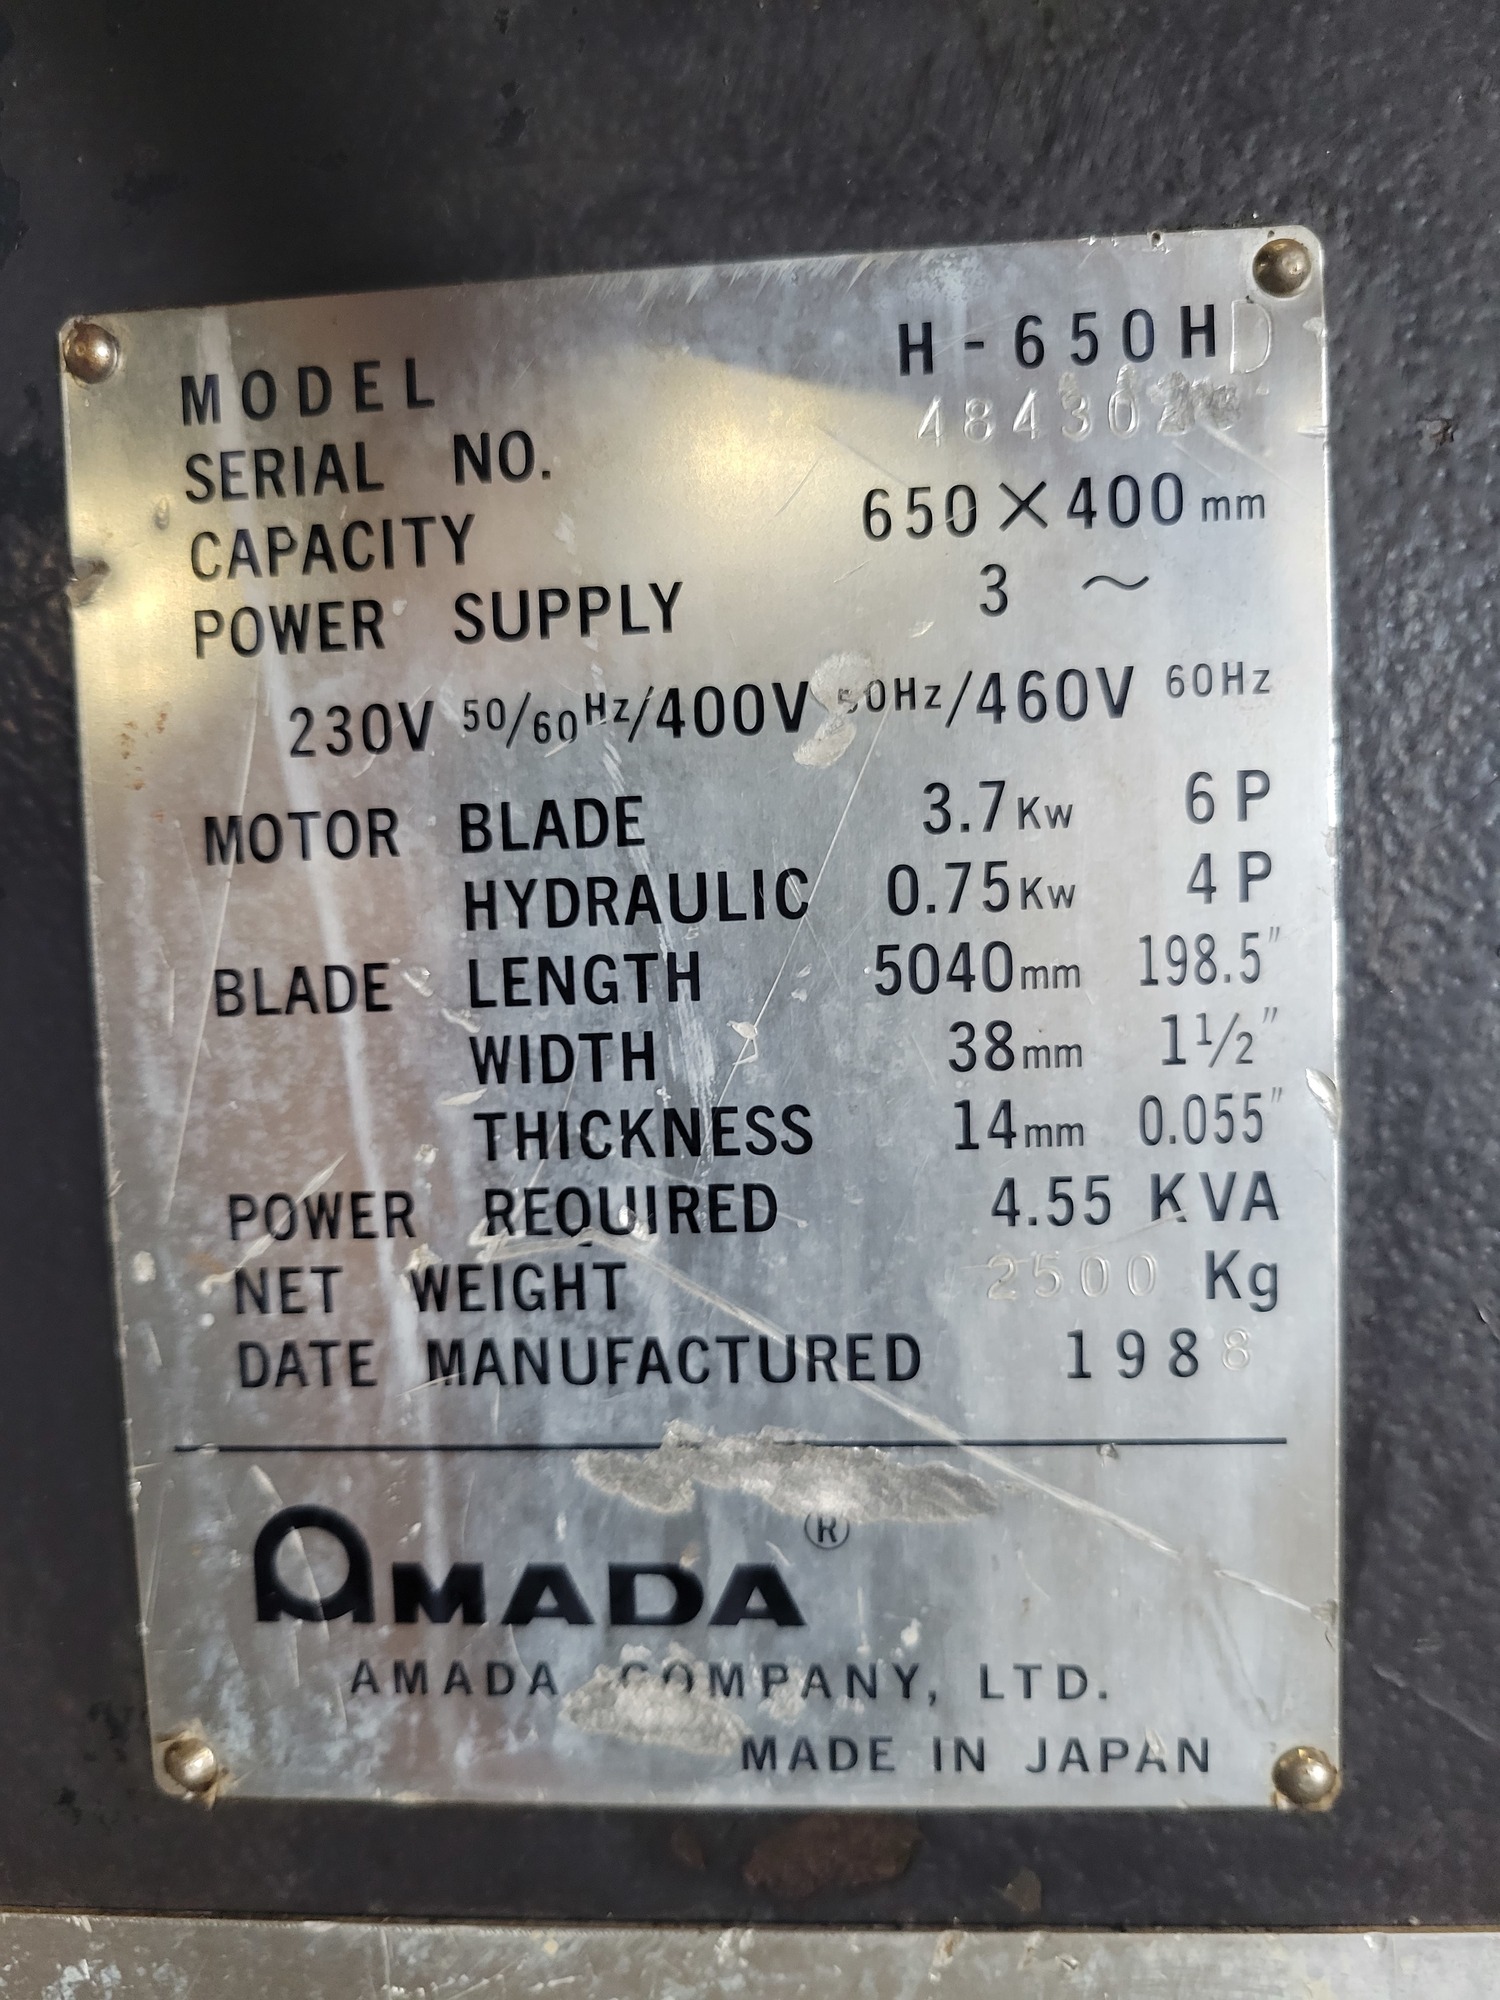 AMADA H-650HD Horizontal Band Saws (Semi-Automatic) | Myers Technology Co., LLC